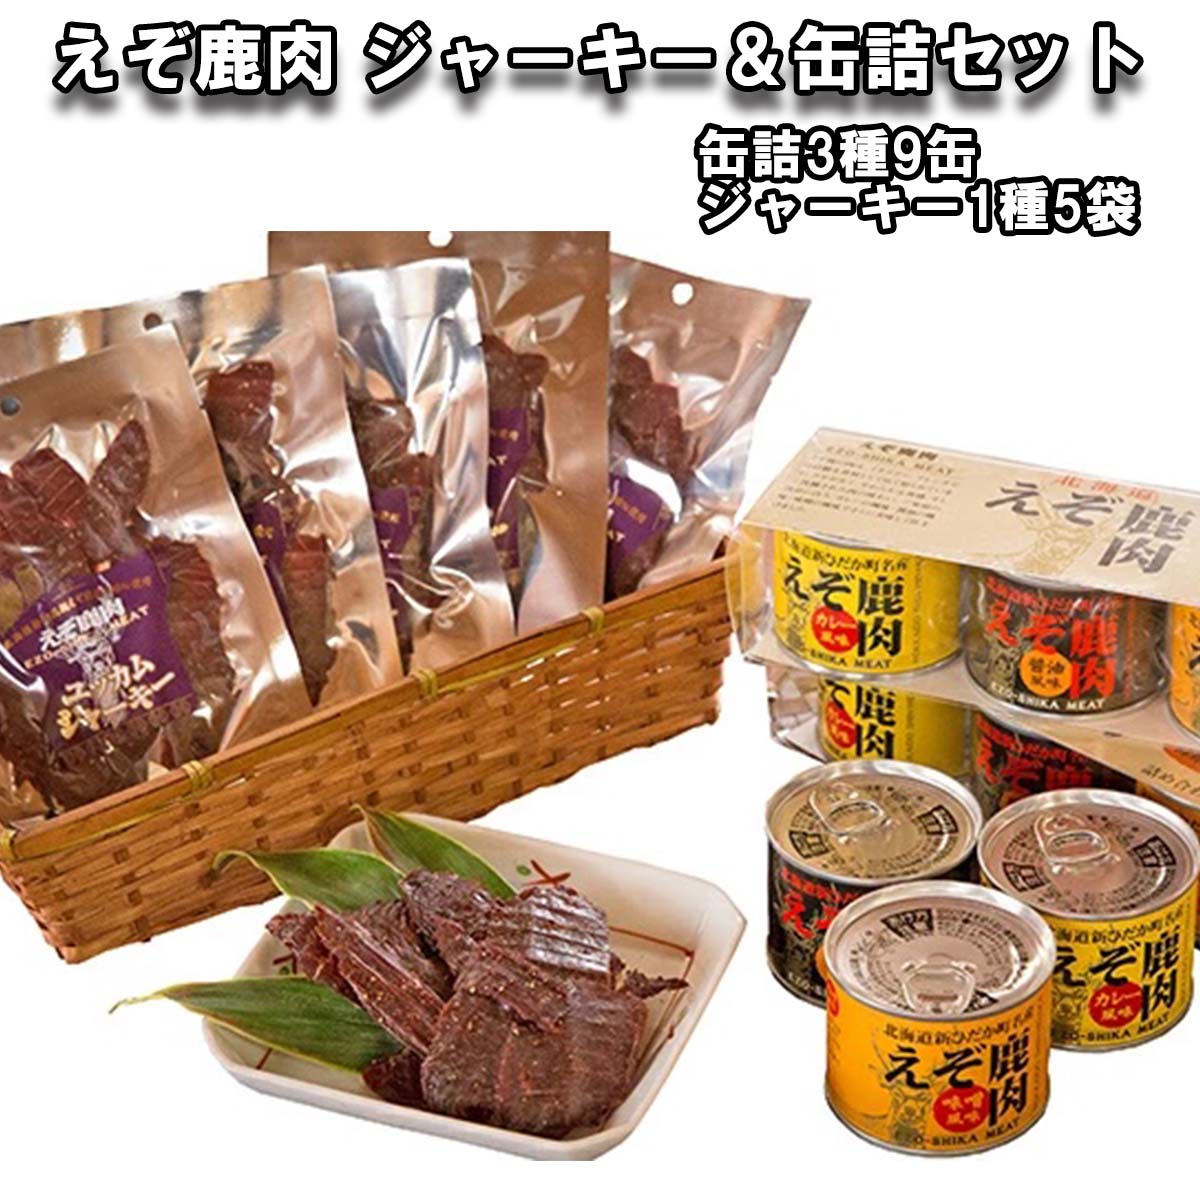 【ふるさと納税】 北海道産 鹿肉 ジャーキー 缶詰 セット 